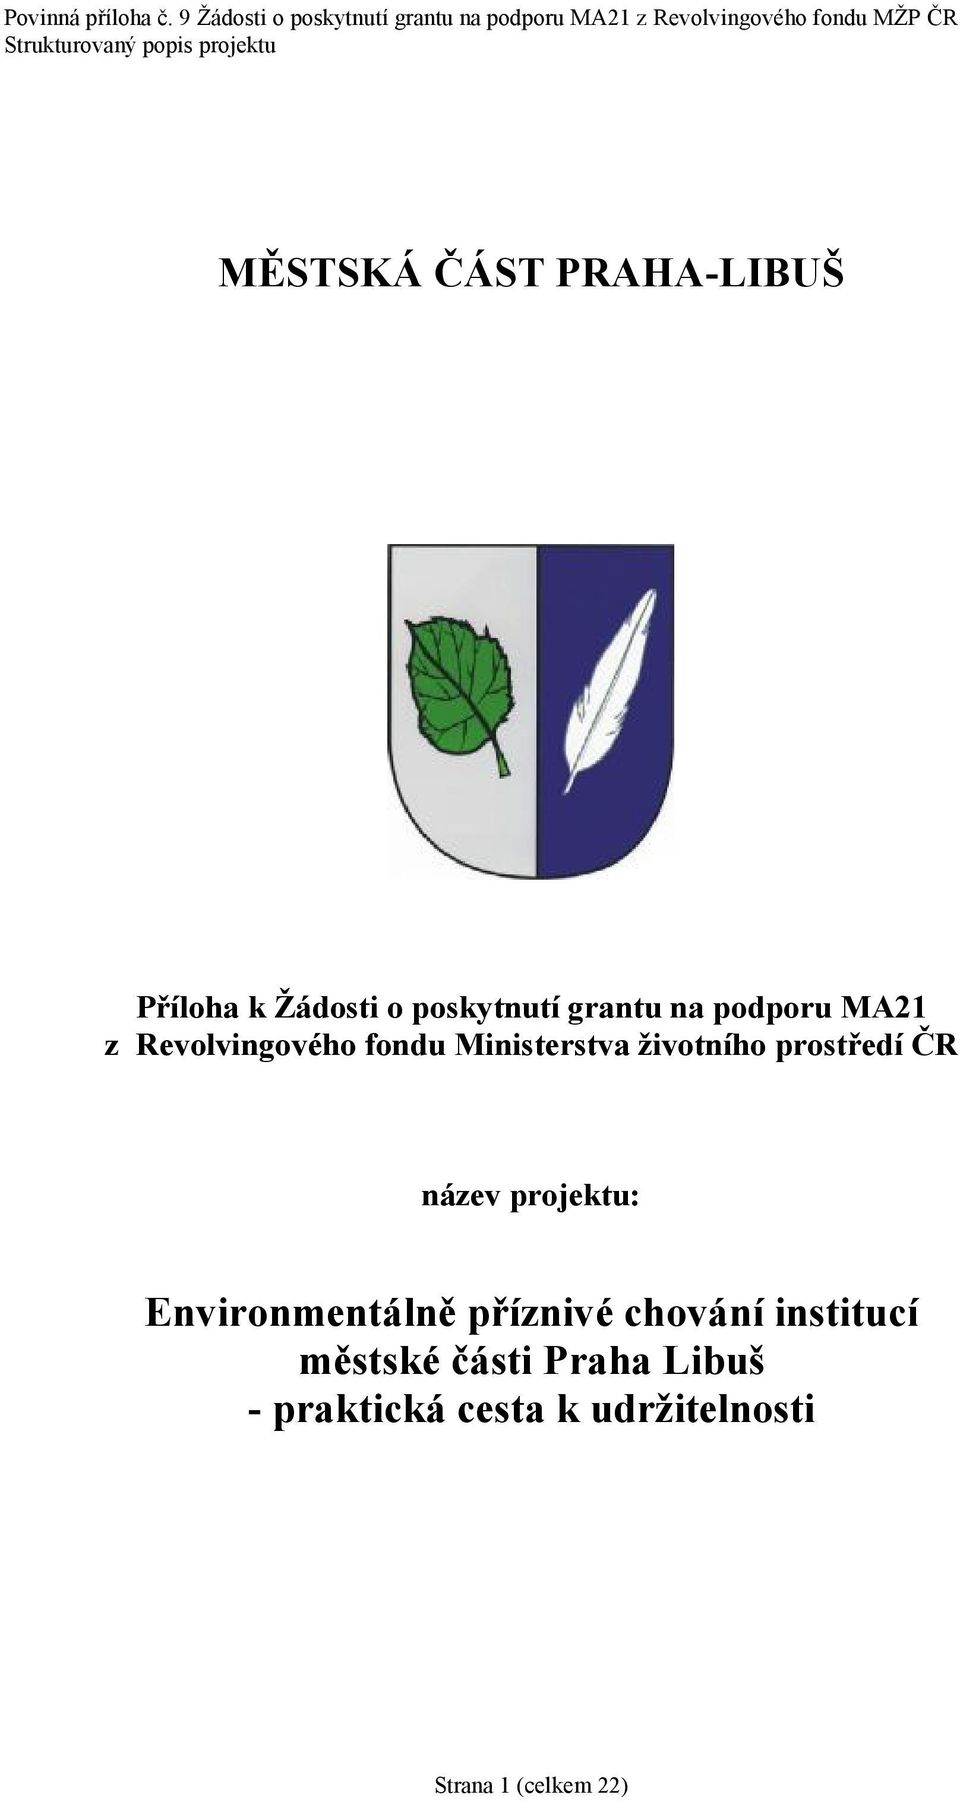 CR nazev projektu: Environmentalnč prıznive chovanı institucı mčstske